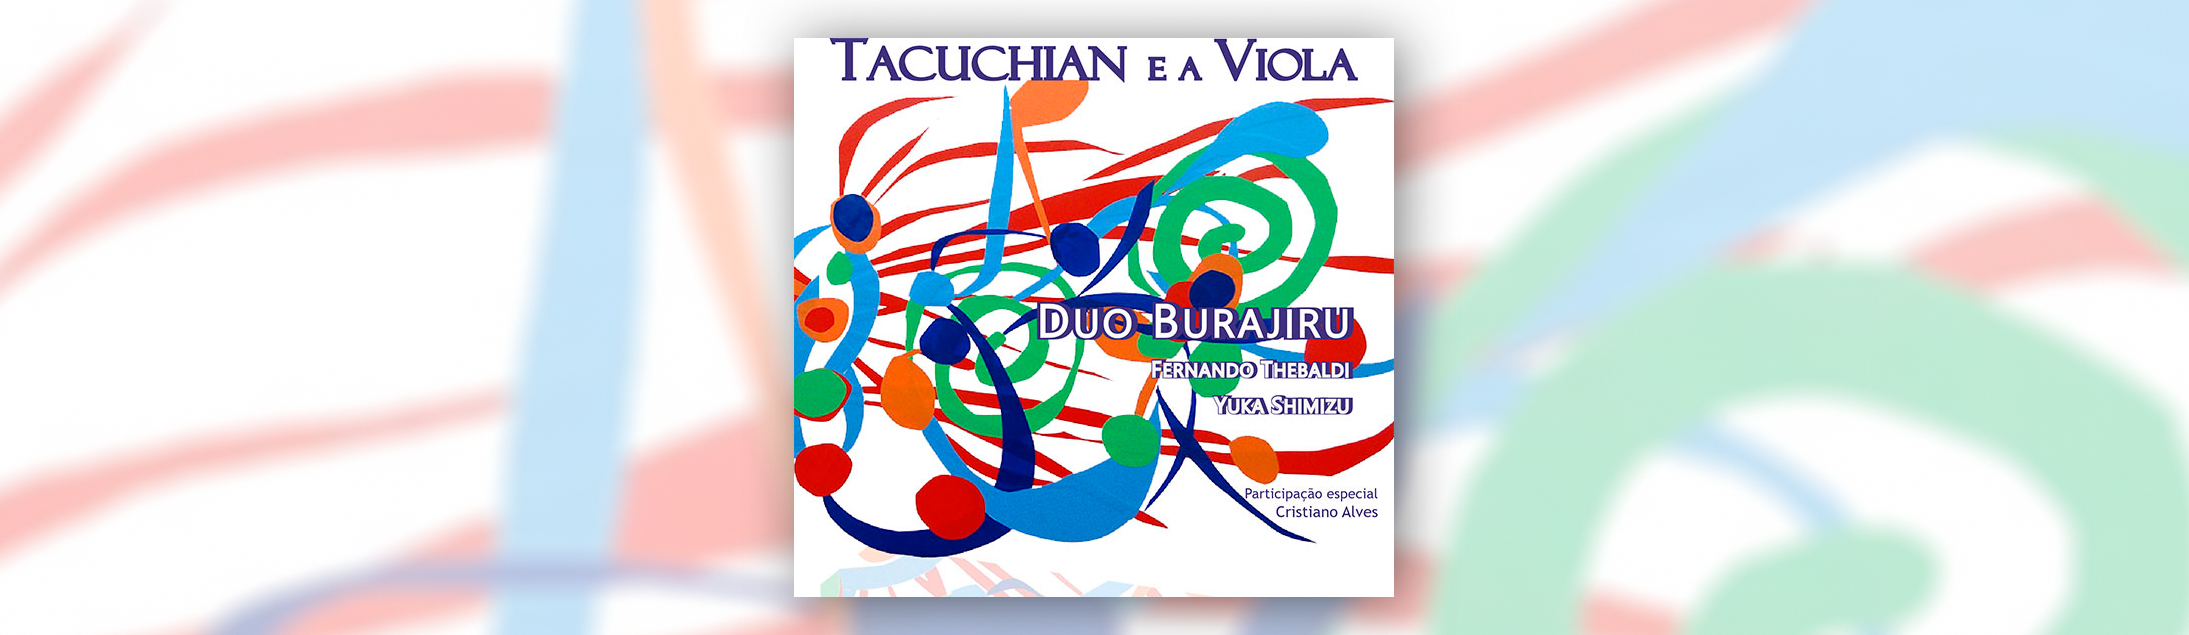 Ricardo Tacuchian é homenageado pelo Dujo Burajiru em novo CD